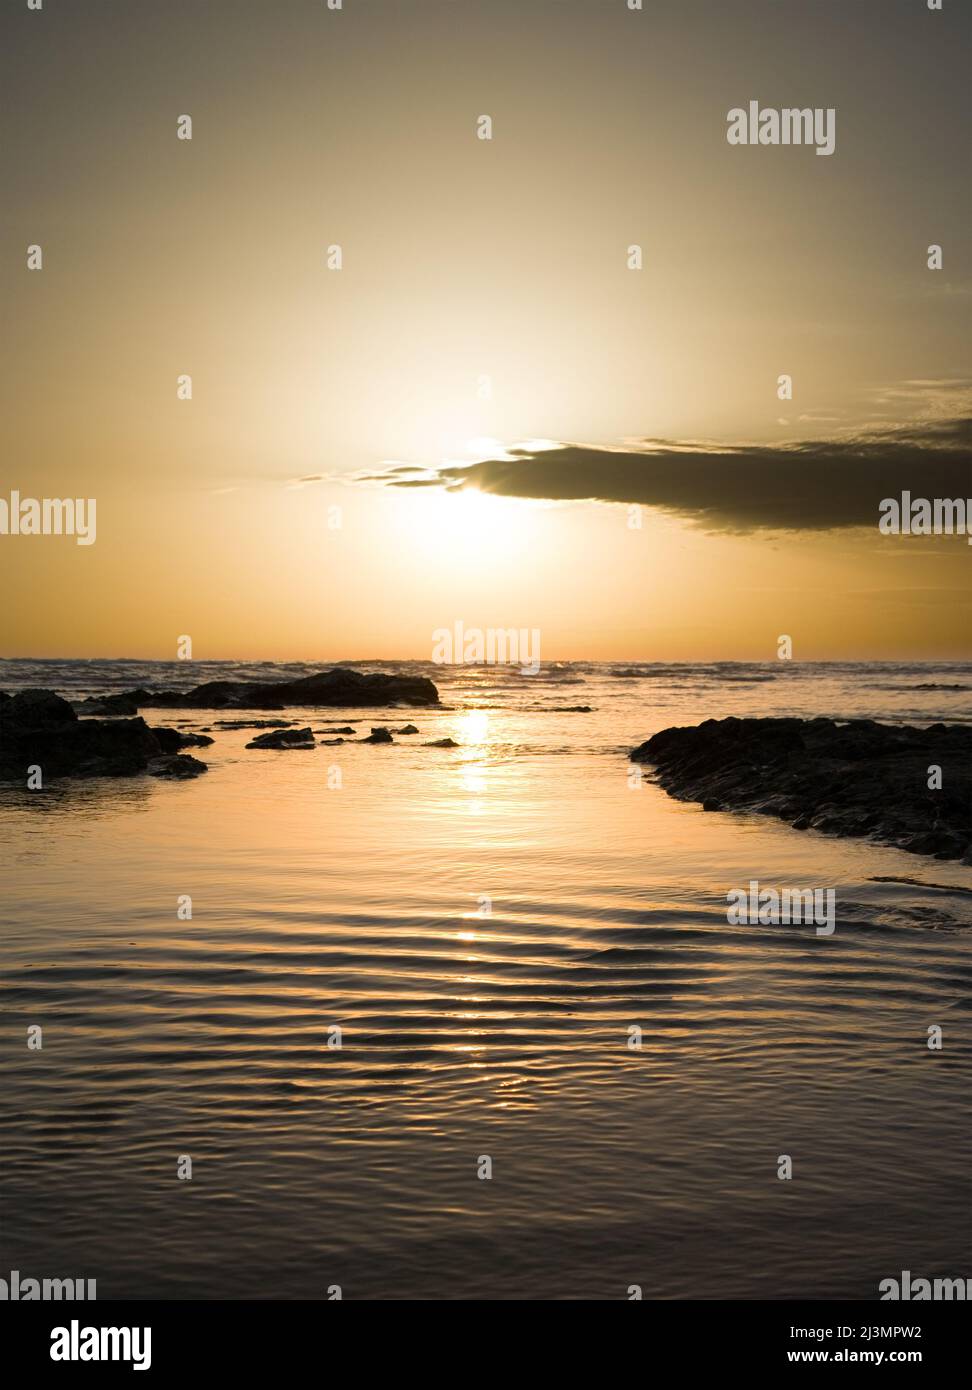 Sunset on water wavy of sea Stock Photo